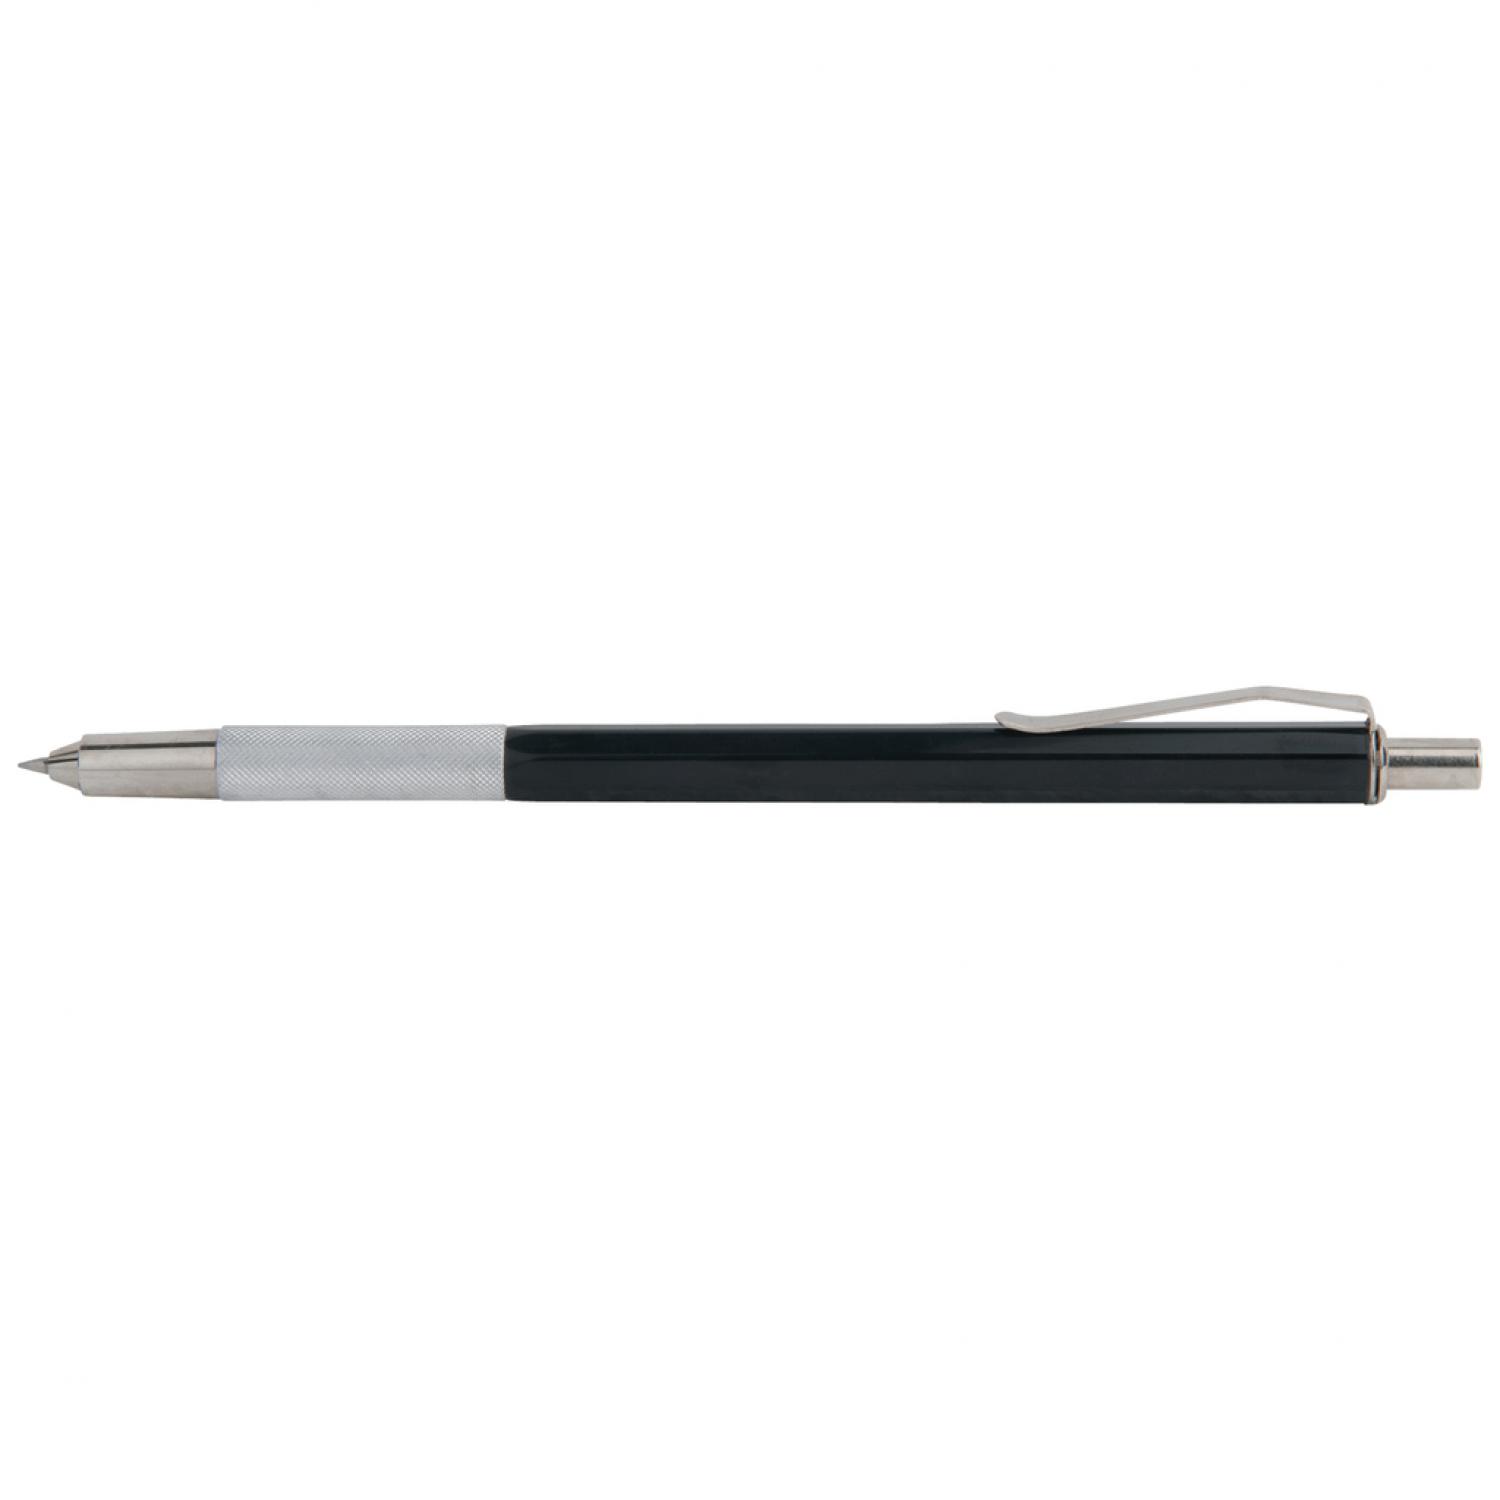 Твердосплавный разметчик в виде шариковой ручки, 160 мм